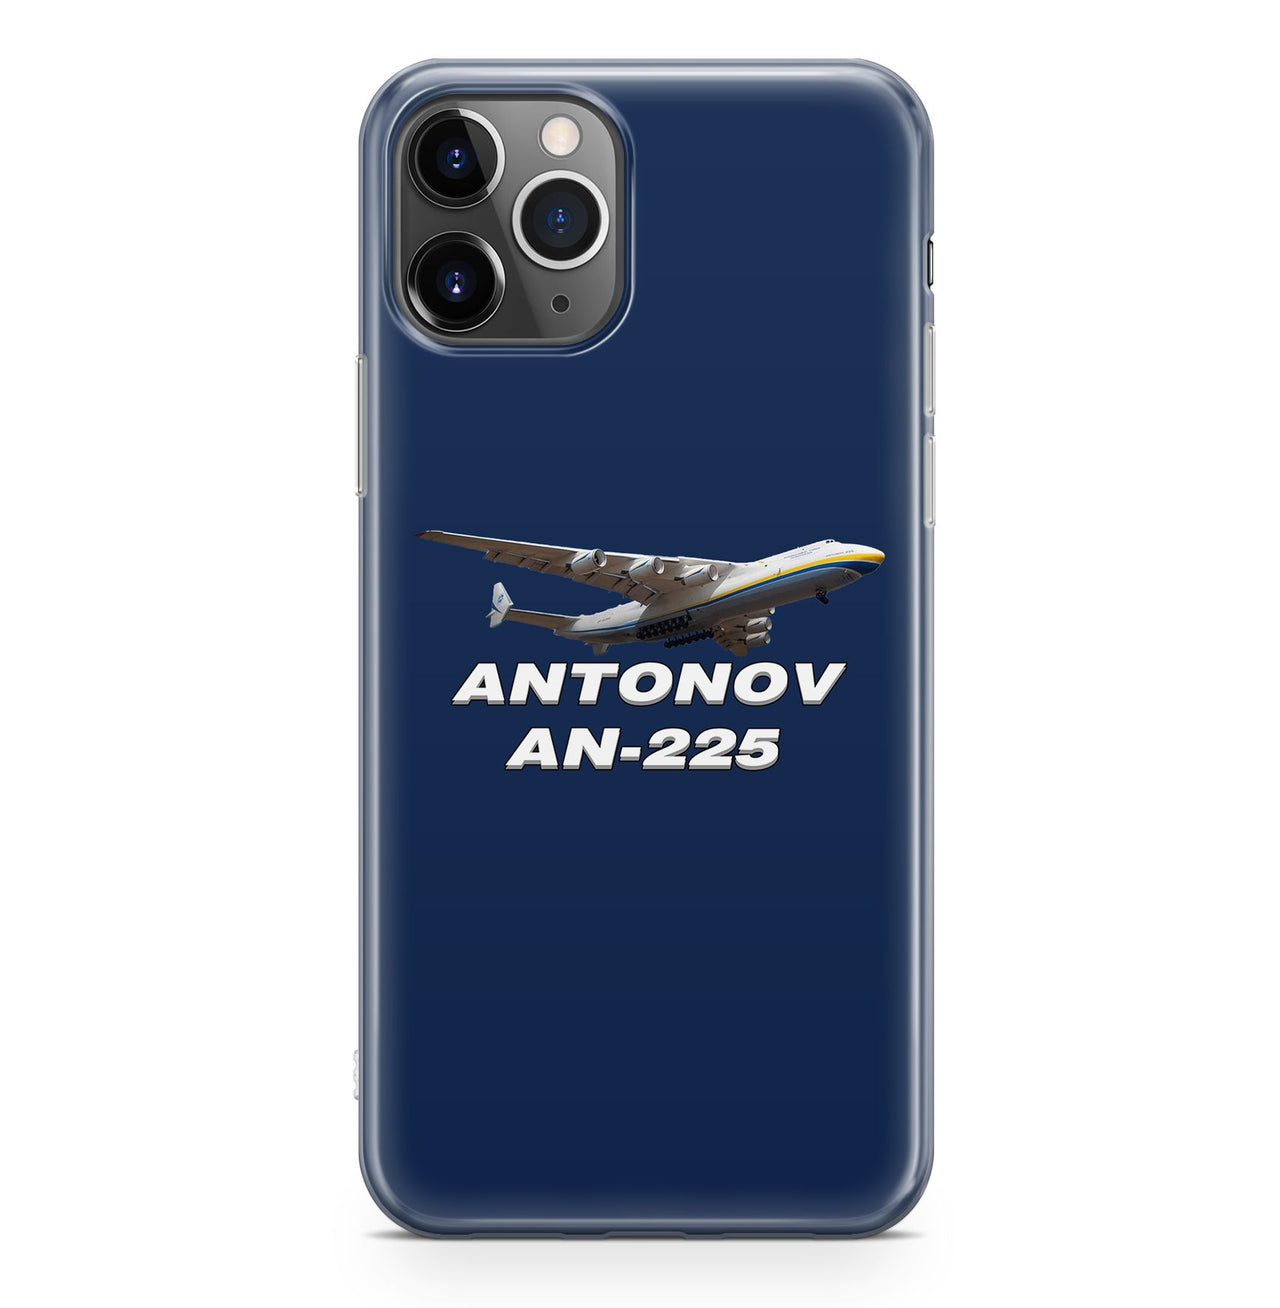 Antonov AN-225 (15) Designed iPhone Cases